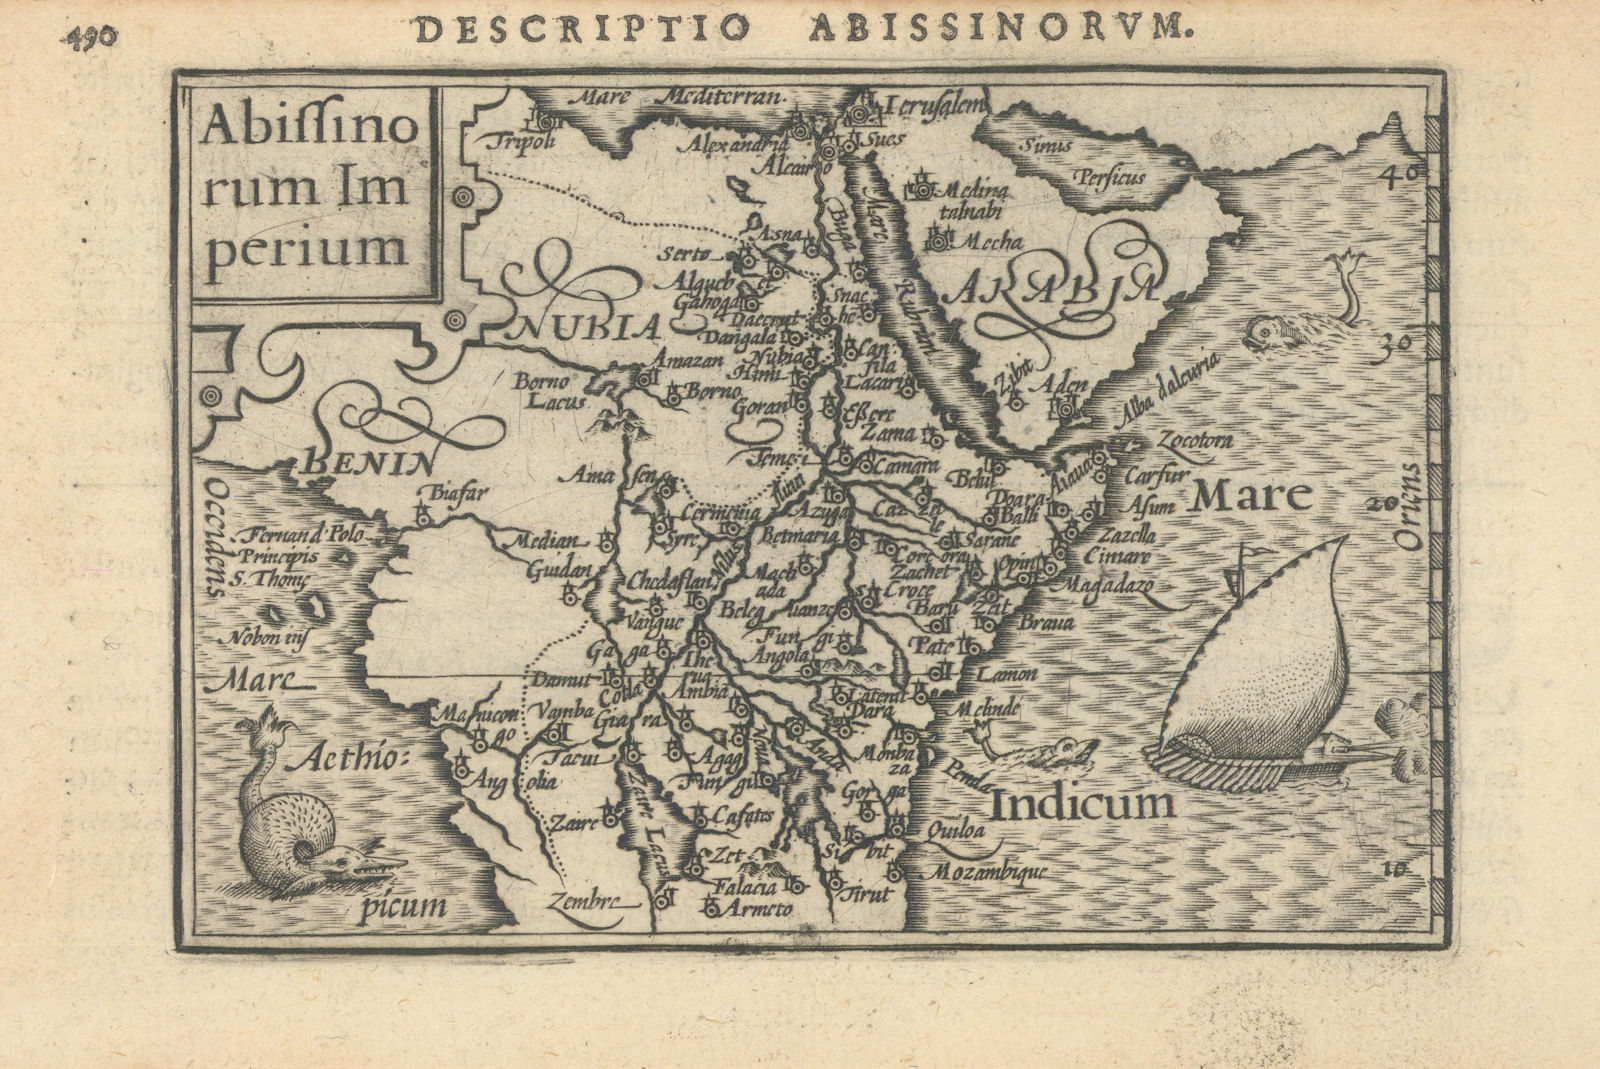 Abissinorum Imperium. Bertius/Langenes. Abyssinian Empire. East Africa 1603 map